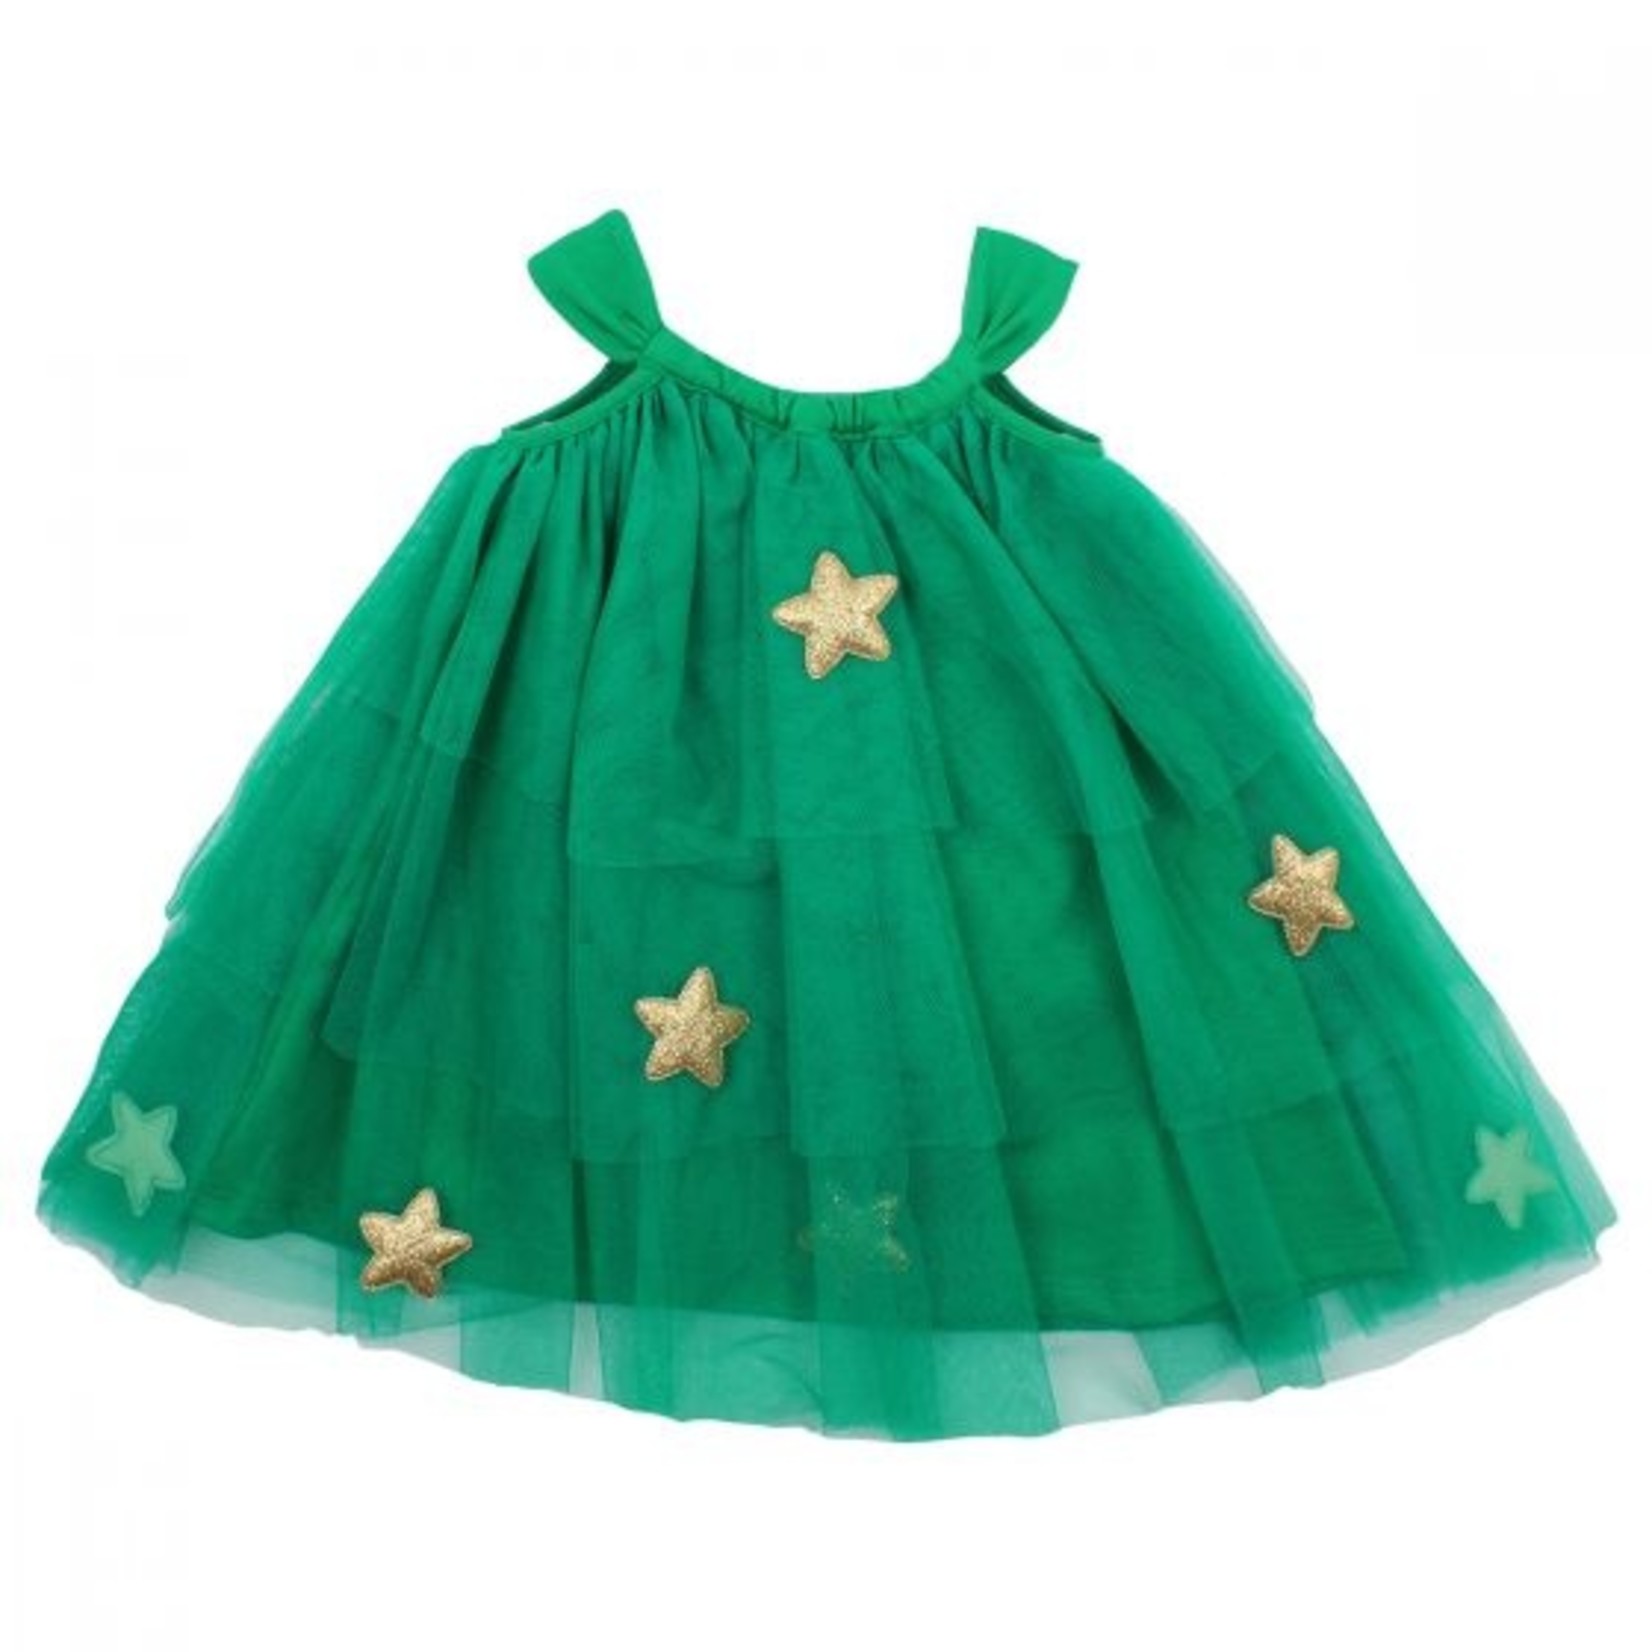 Minihaha Green Xmas Tree Dress with Headband